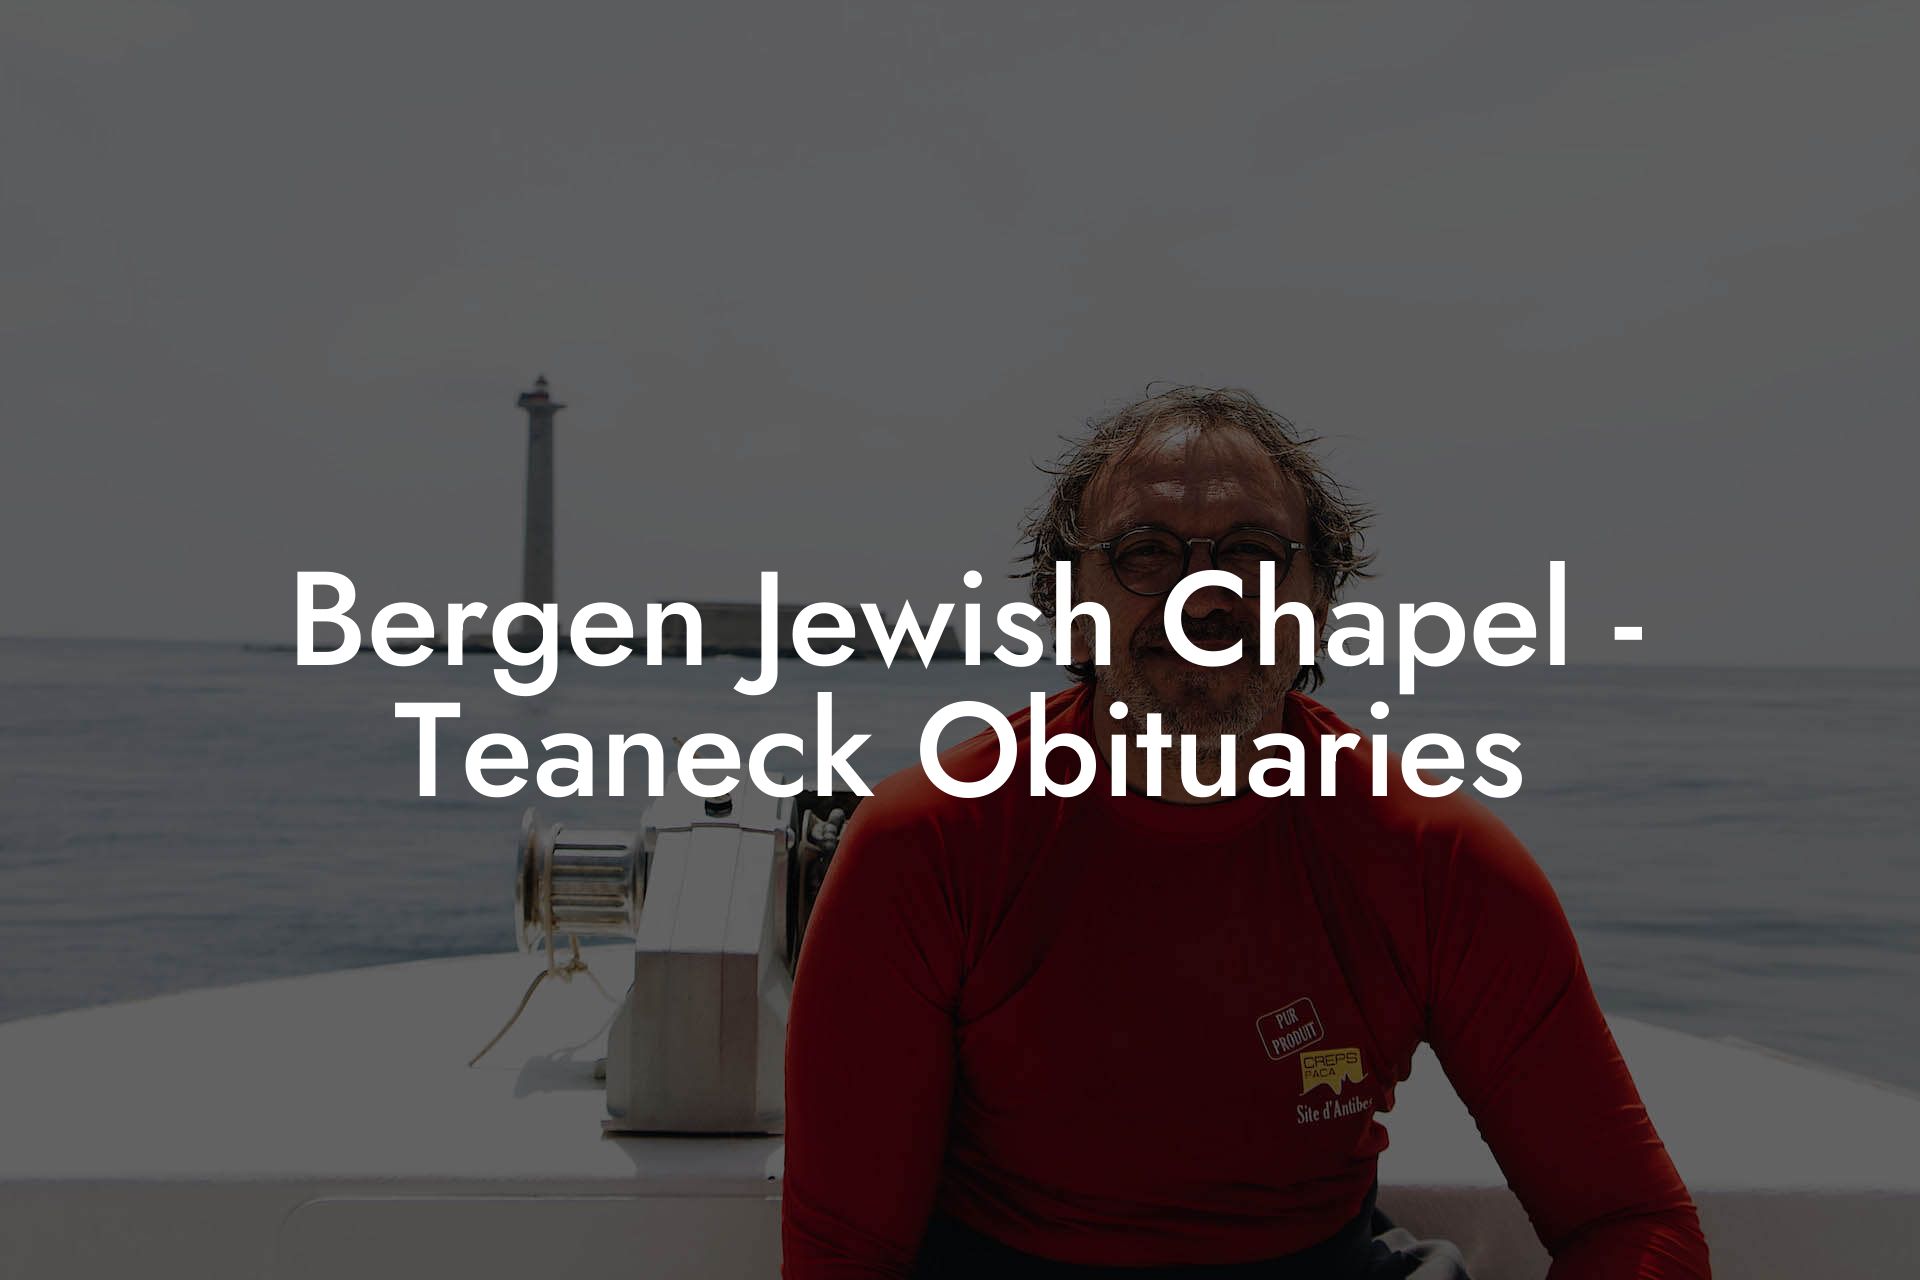 Bergen Jewish Chapel - Teaneck Obituaries